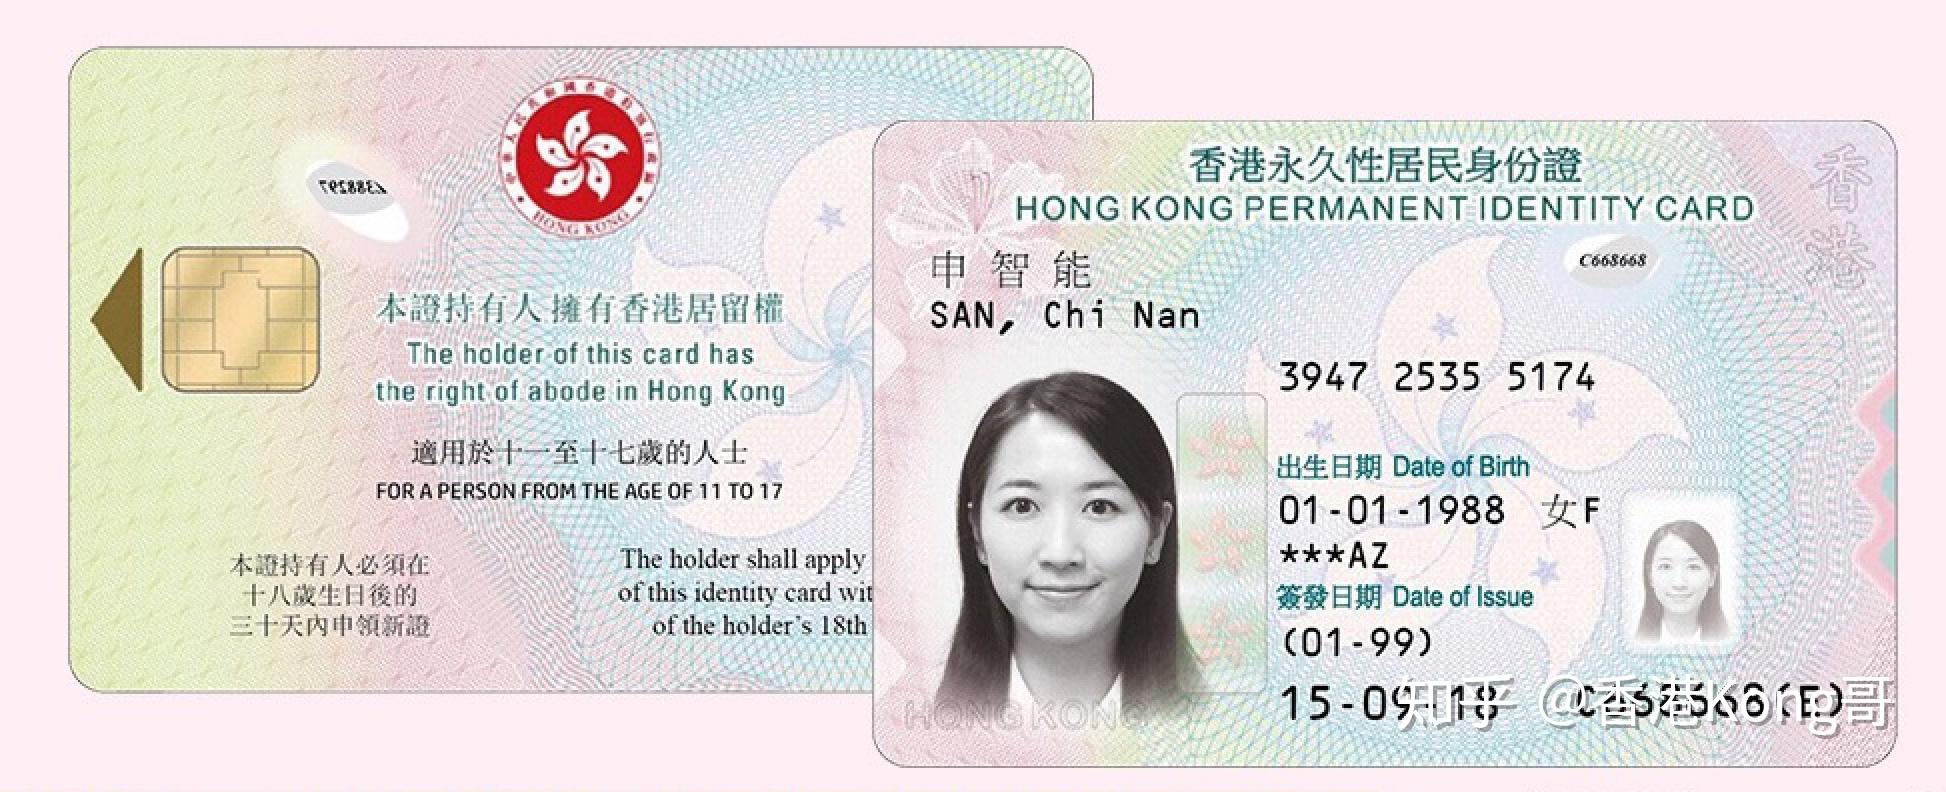 香港上台攻略:大陆居民持护照、港澳通行证办理香港手机卡套餐 - 知乎